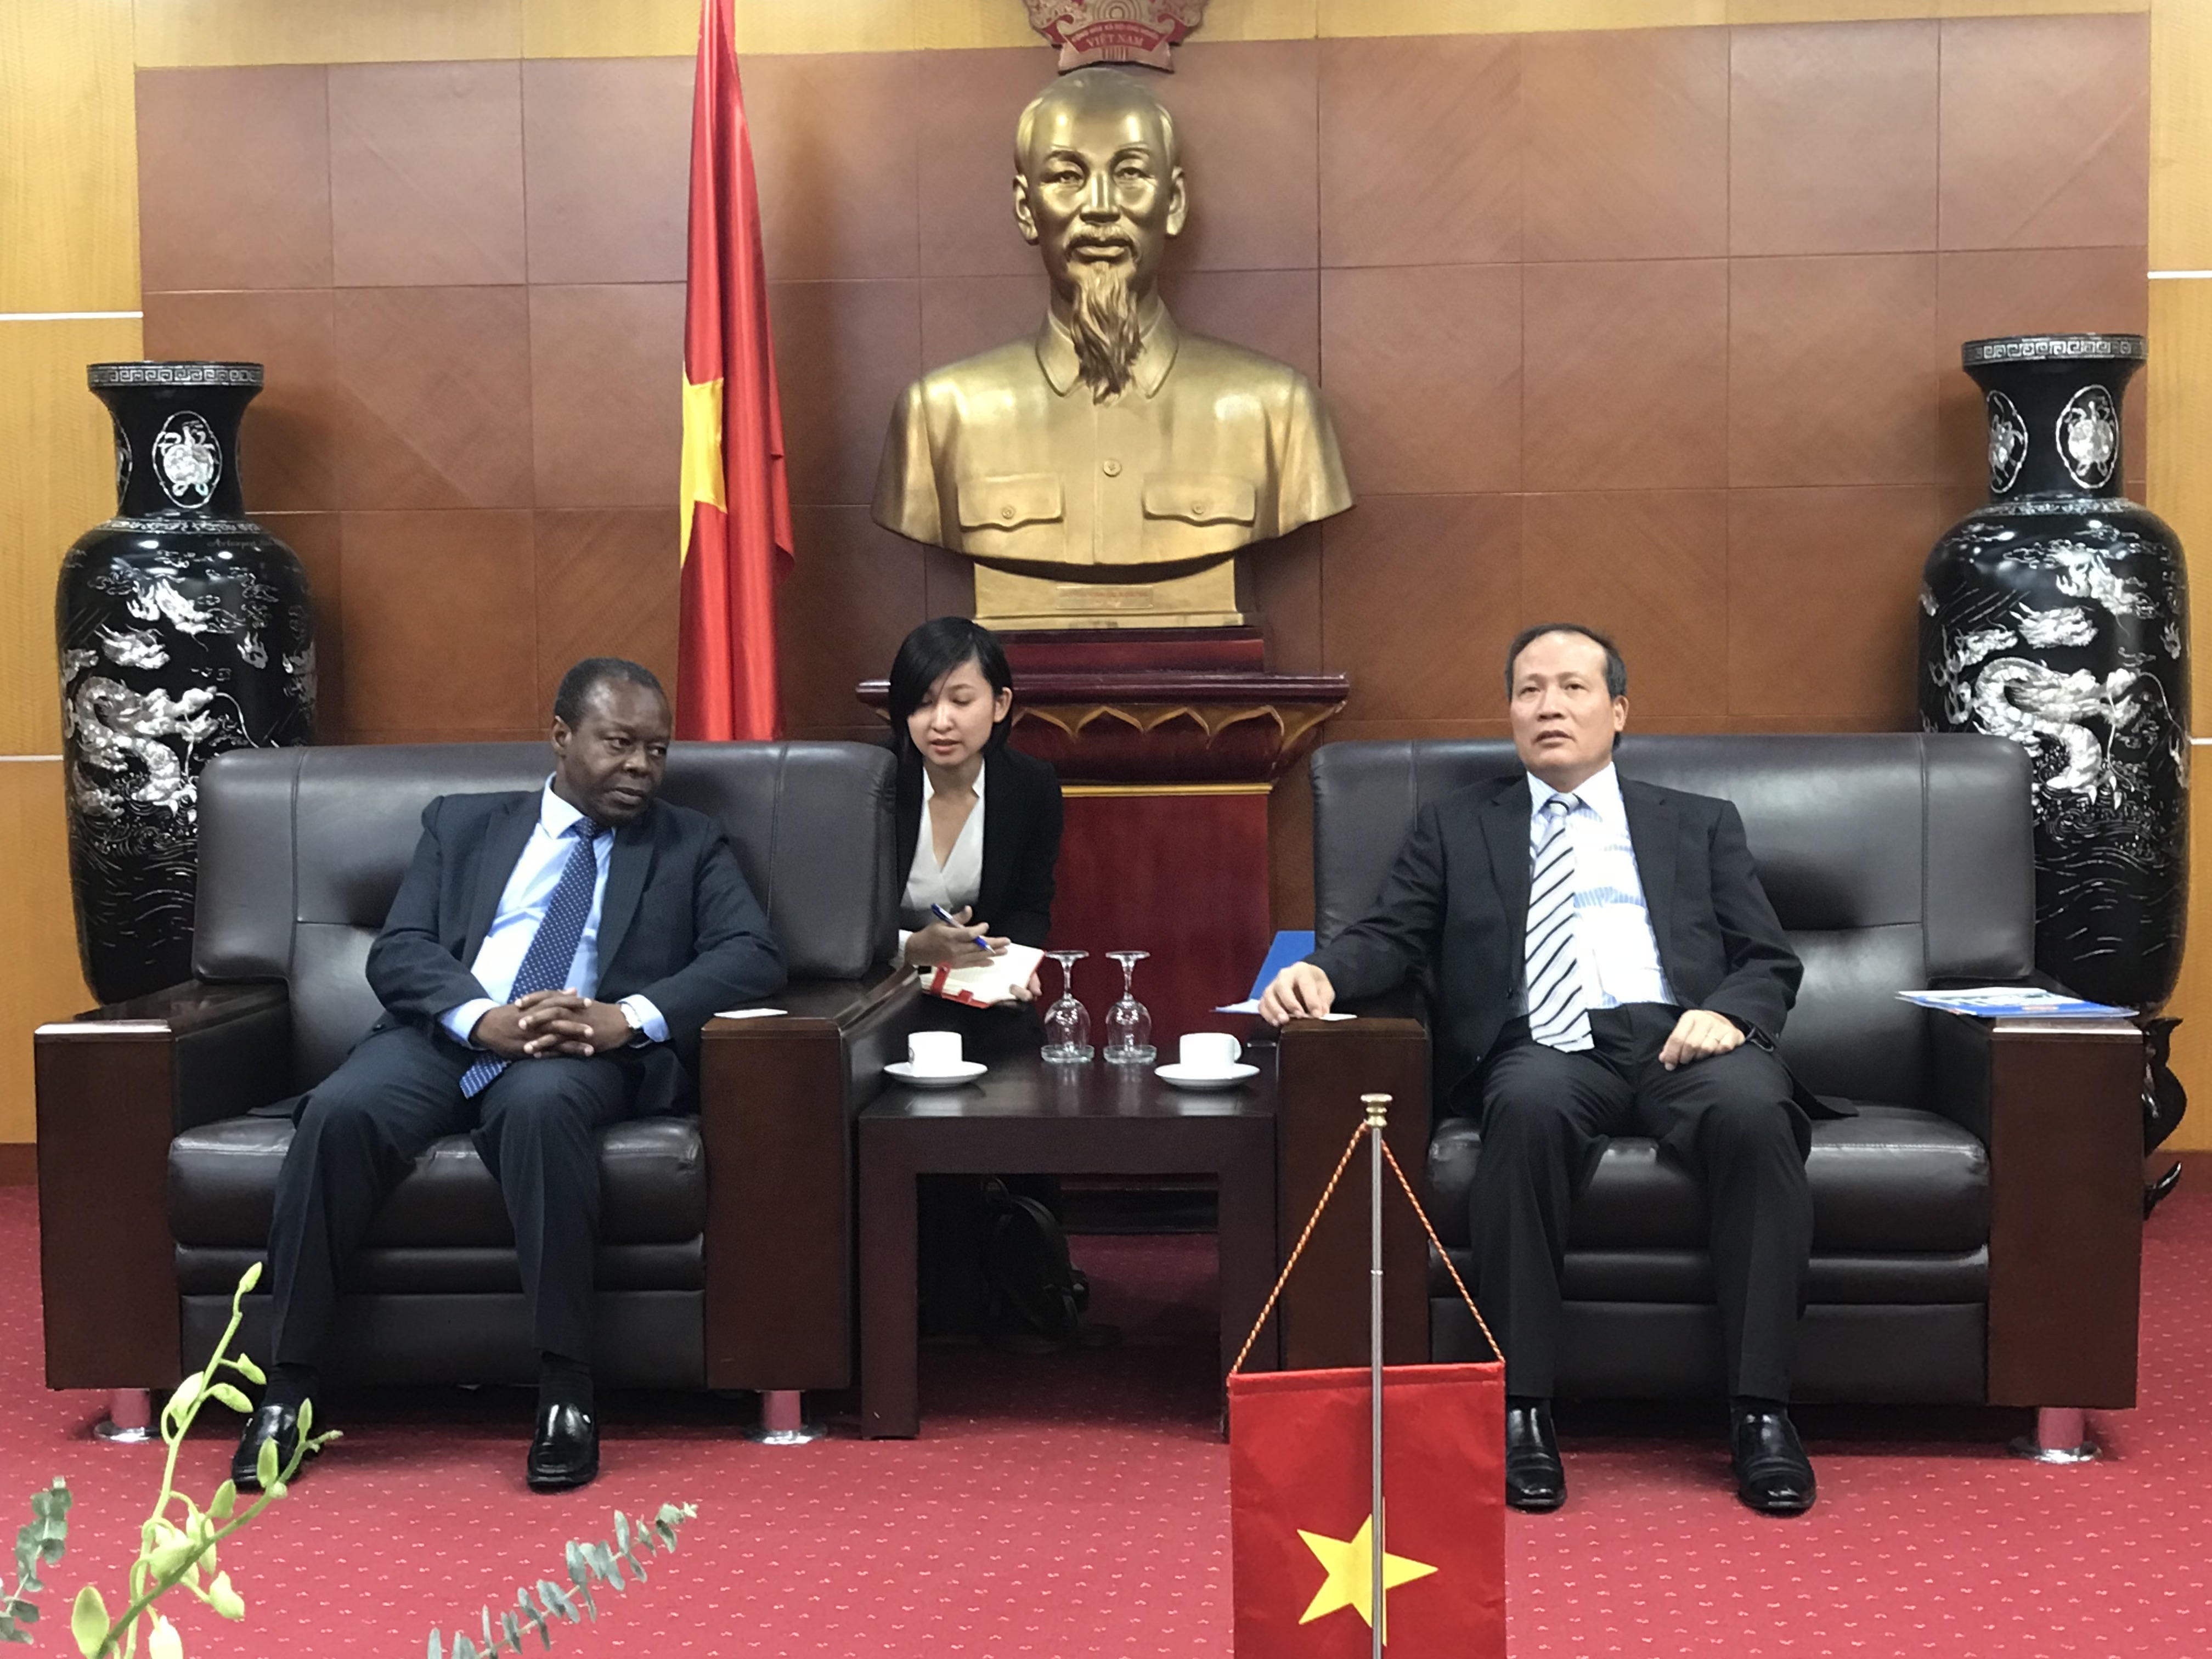 Đại sứ Angola: Đại sứ Angola tại Việt Nam năm 2024 là một người bạn thân thiết của Việt Nam. Ông chú trọng đến việc tăng cường hợp tác giữa hai quốc gia về kinh tế, văn hóa và giáo dục. Hãy xem hình ảnh của ông để hiểu sâu hơn về những nỗ lực mà các quốc gia đang thực hiện để khẳng định vai trò của mình trong cộng đồng quốc tế.